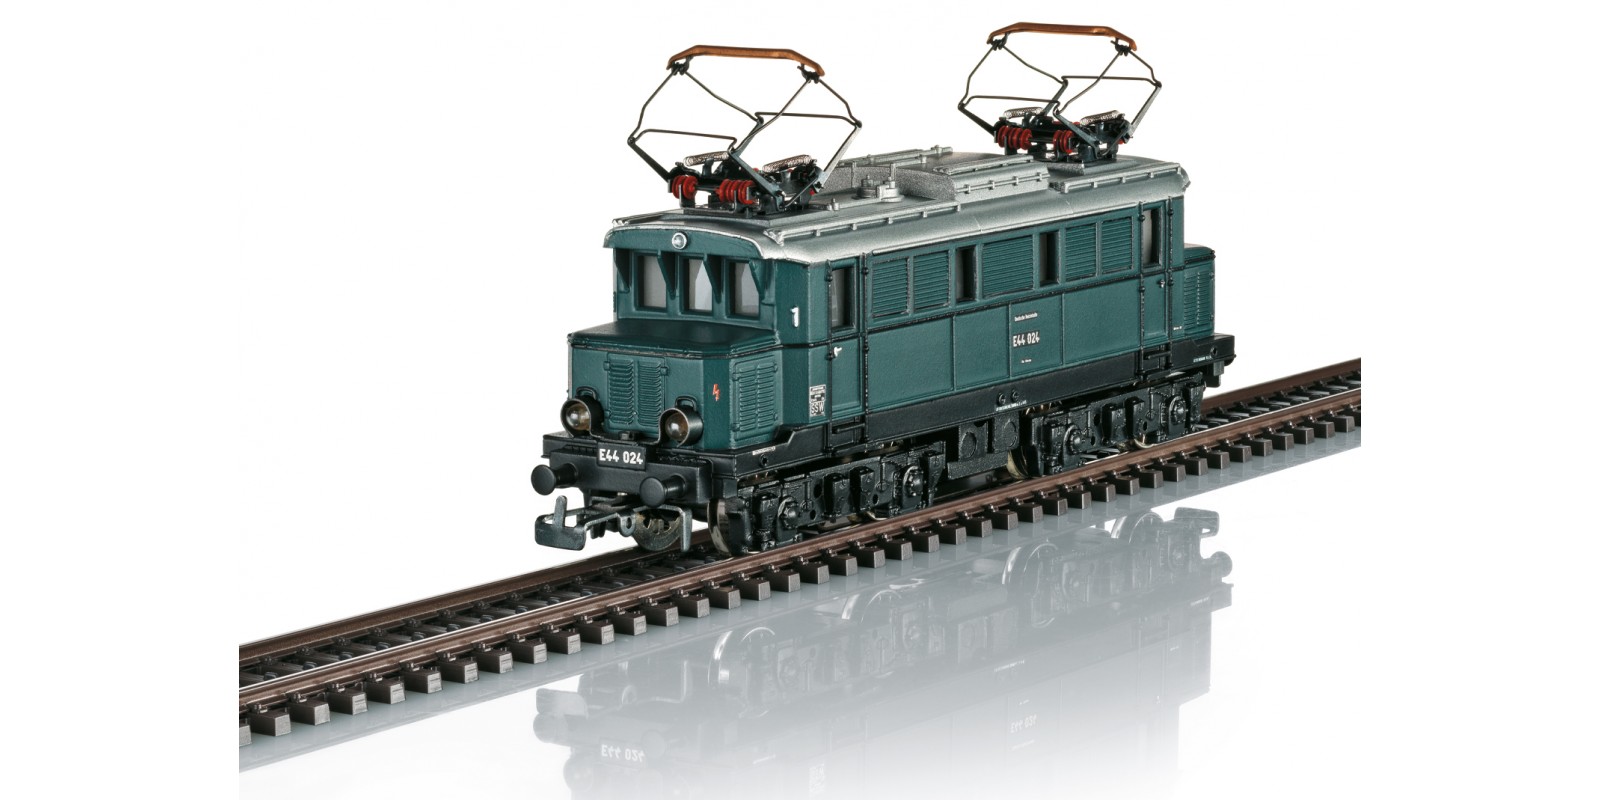 30111 Class E 44 Electric Locomotive